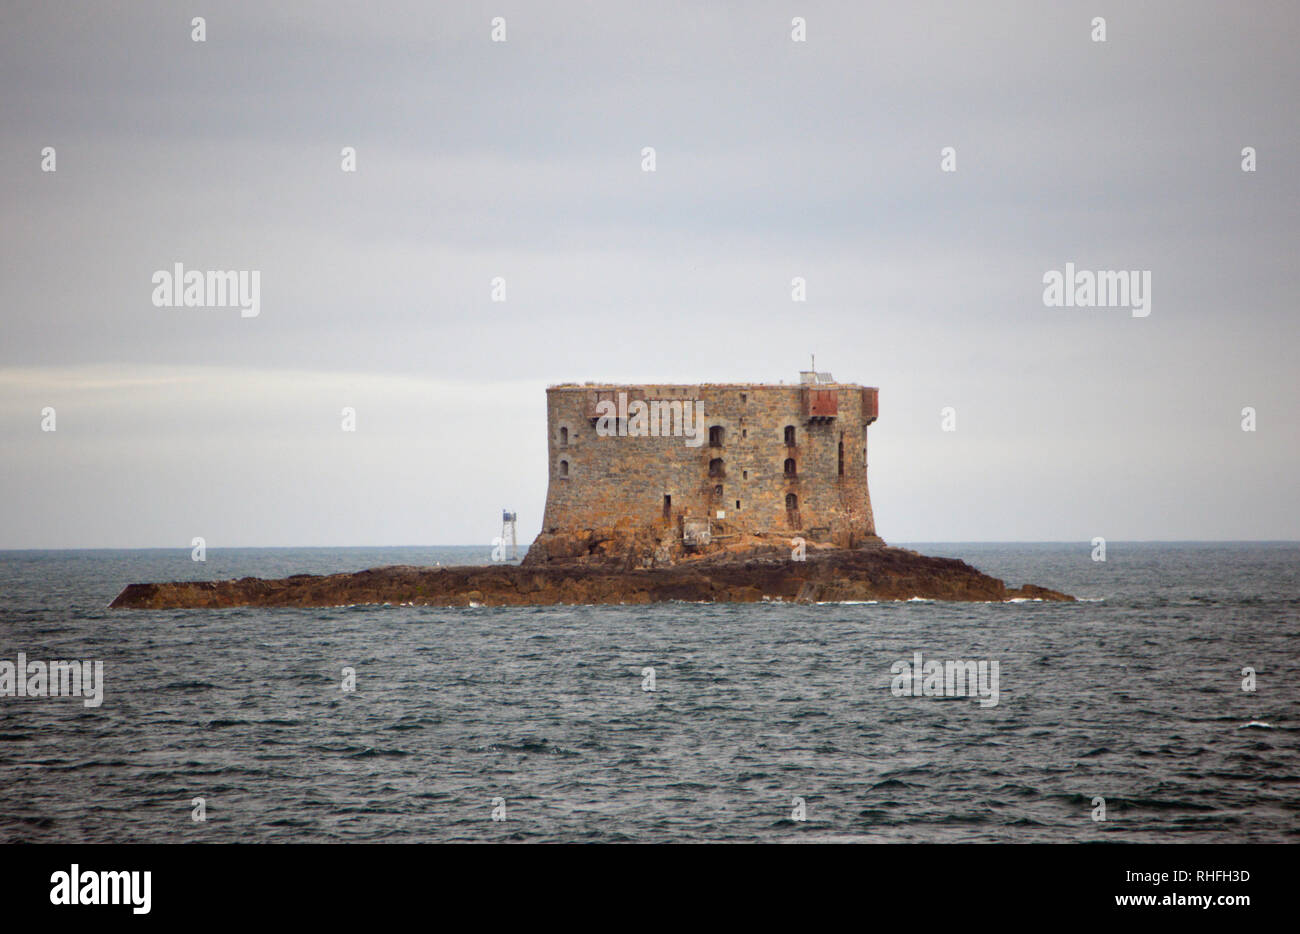 Bréhon Turm (Fort Brehon) auf einer Insel im Kleinen Russell Kanal in der Nähe von St Peter Port, Guernsey, Channel Islands.de. Stockfoto